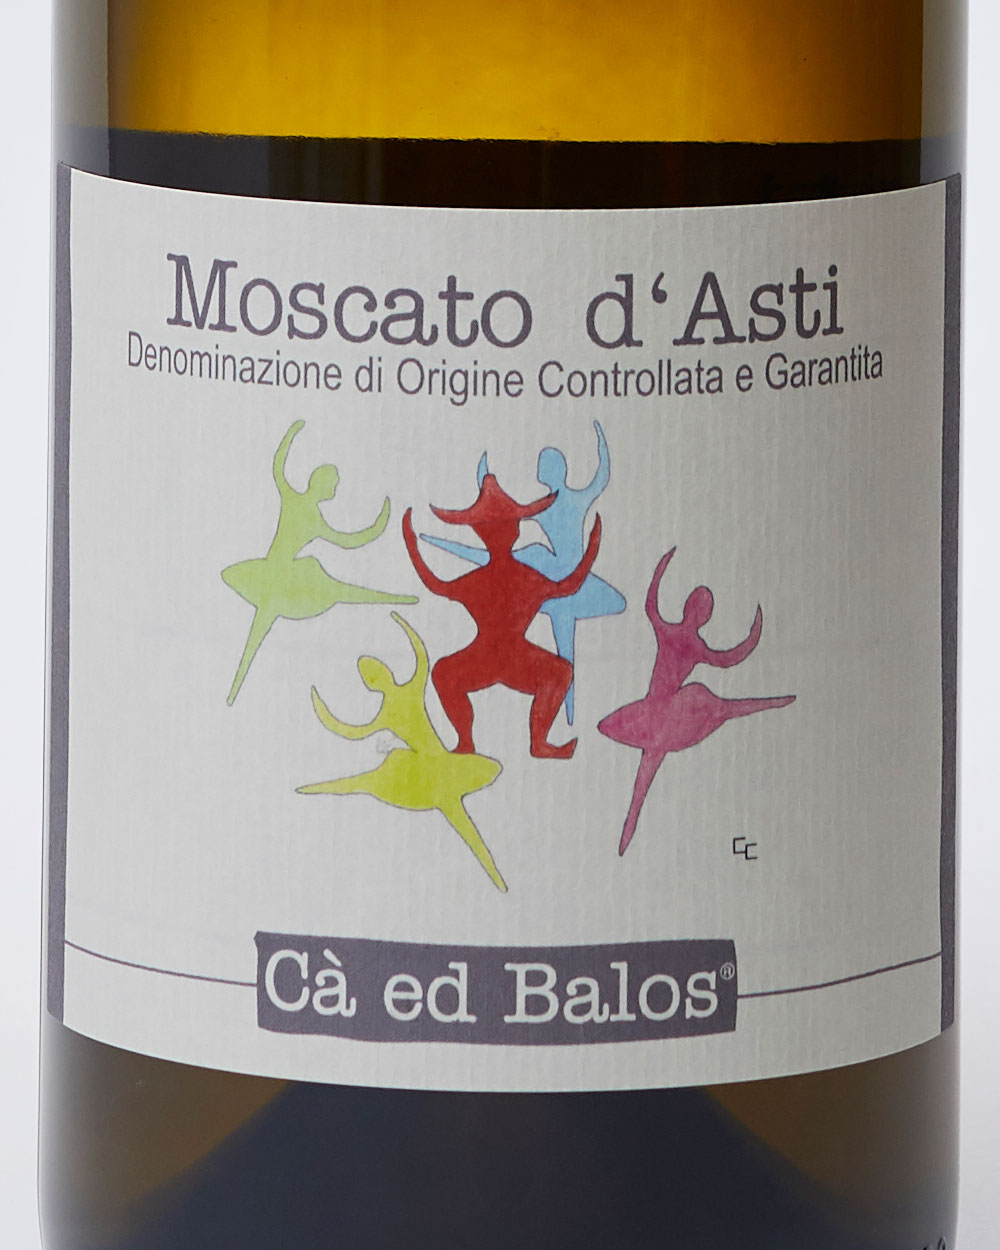 Moscato d'Asti Cà ed Balos label